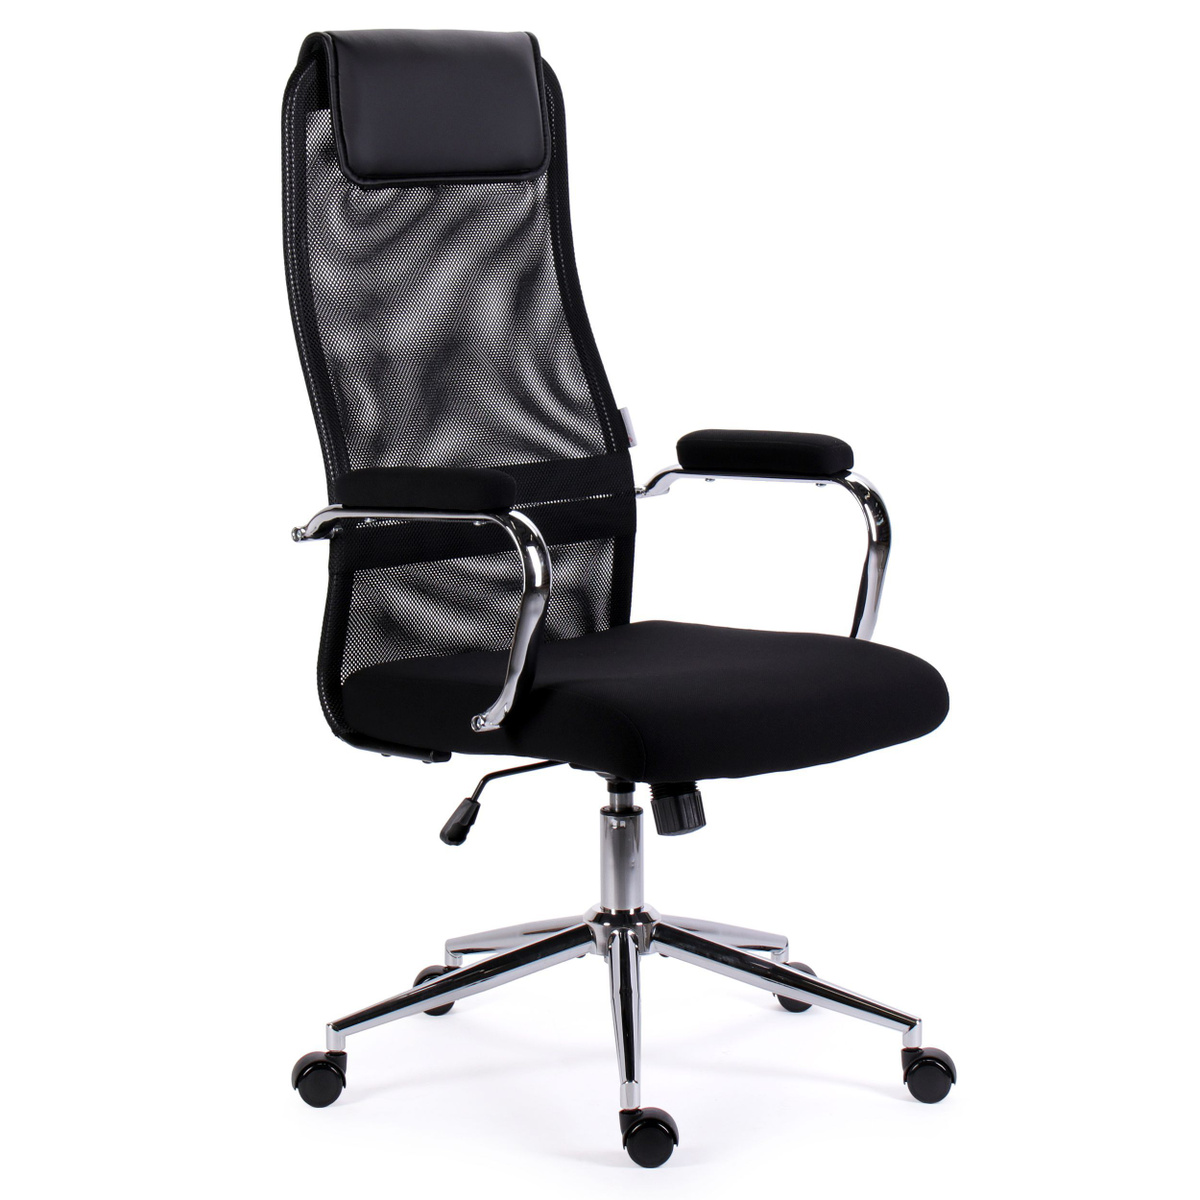 кресло компьютерное; компьютерное кресло; стул офисный; офисное кресло; кресло офисное; компьютерный стул; офисное кресло сетка; Samurai; Flight; Opera; бюрократ; EX-540;